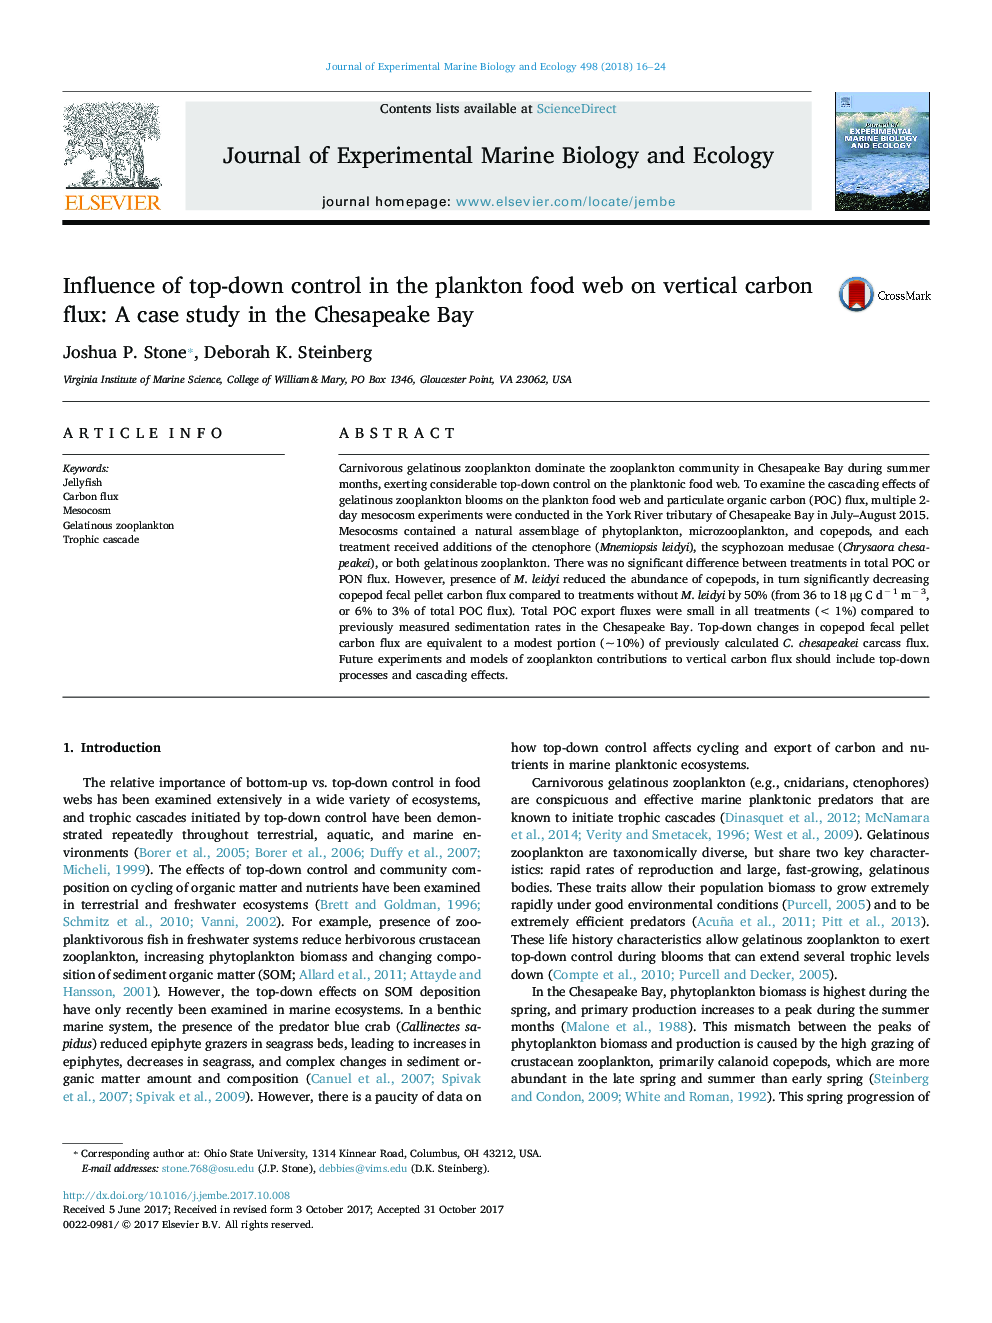 تأثیر کنترل از بالا به پایین در وب غذای پلانکتون بر روی قوس کربن عمودی: مطالعه موردی در خلیج چسپیک 